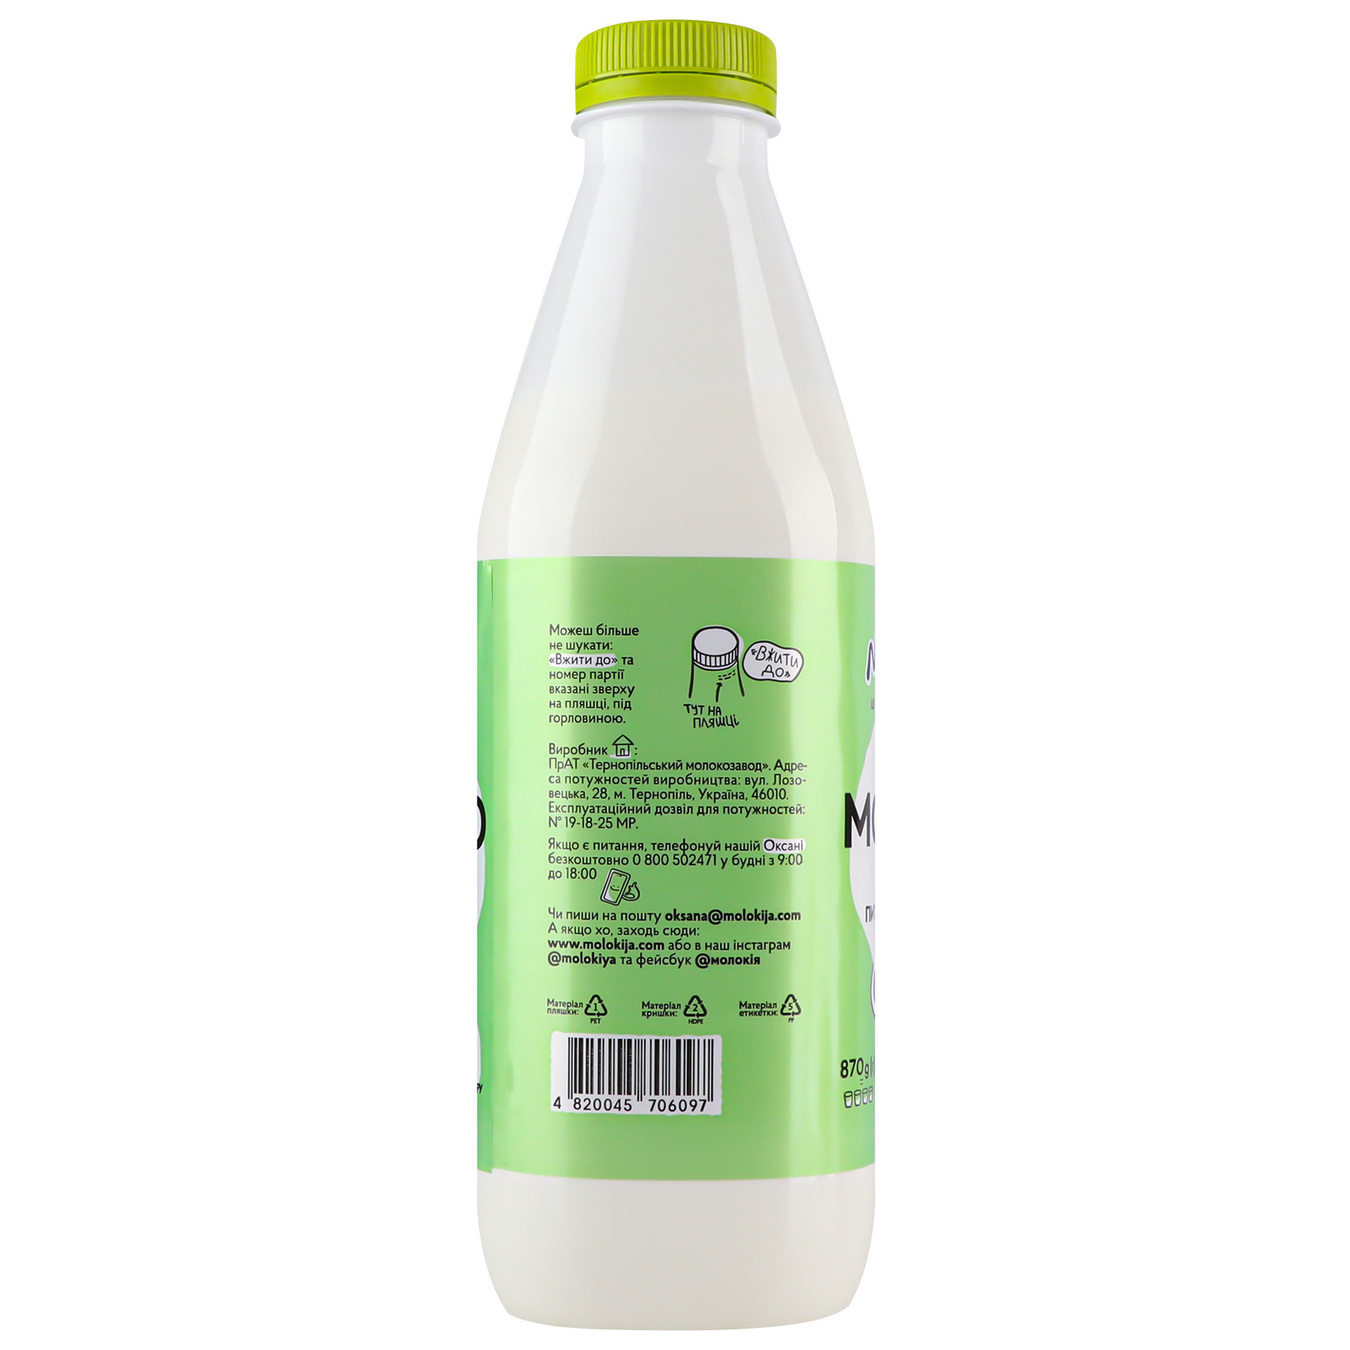 Milk Milk 2.5% 870g 3